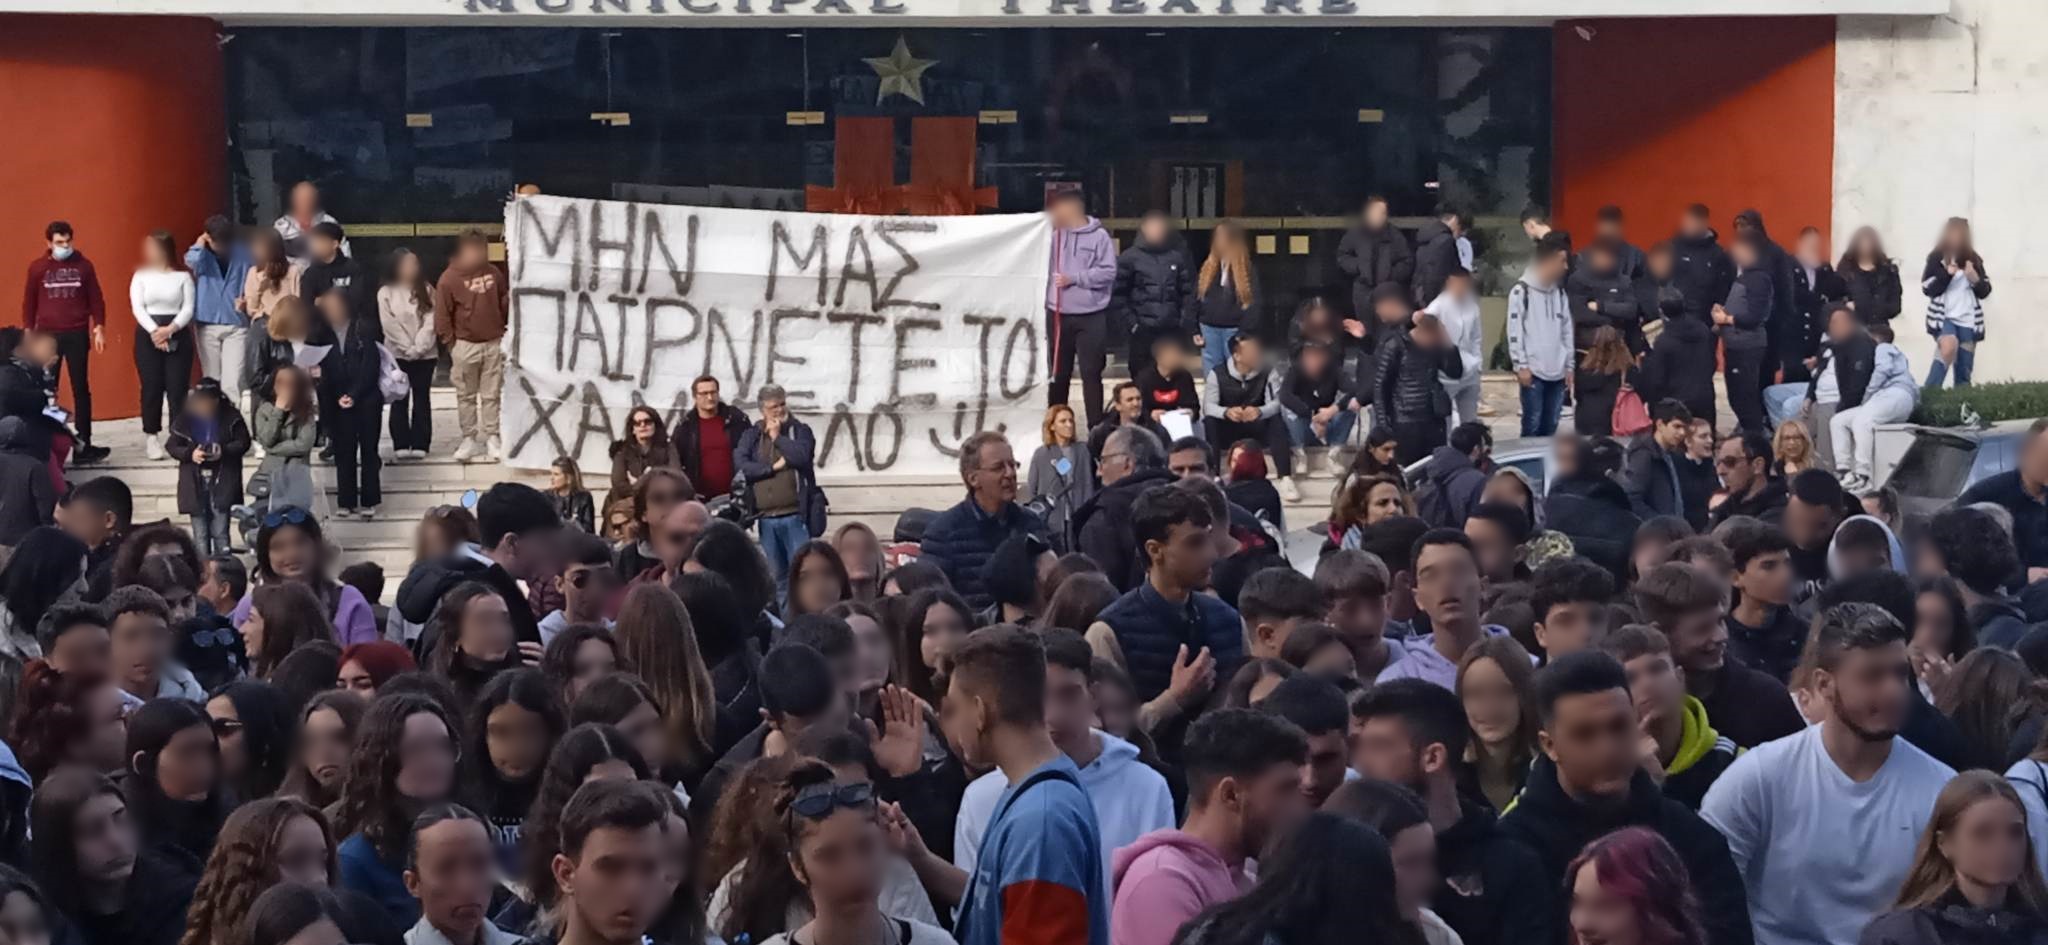 Κέρκυρα: Δεκάδες μαθητές φώναξαν “Μην μας παίρνετε το Χαμόγελο !”